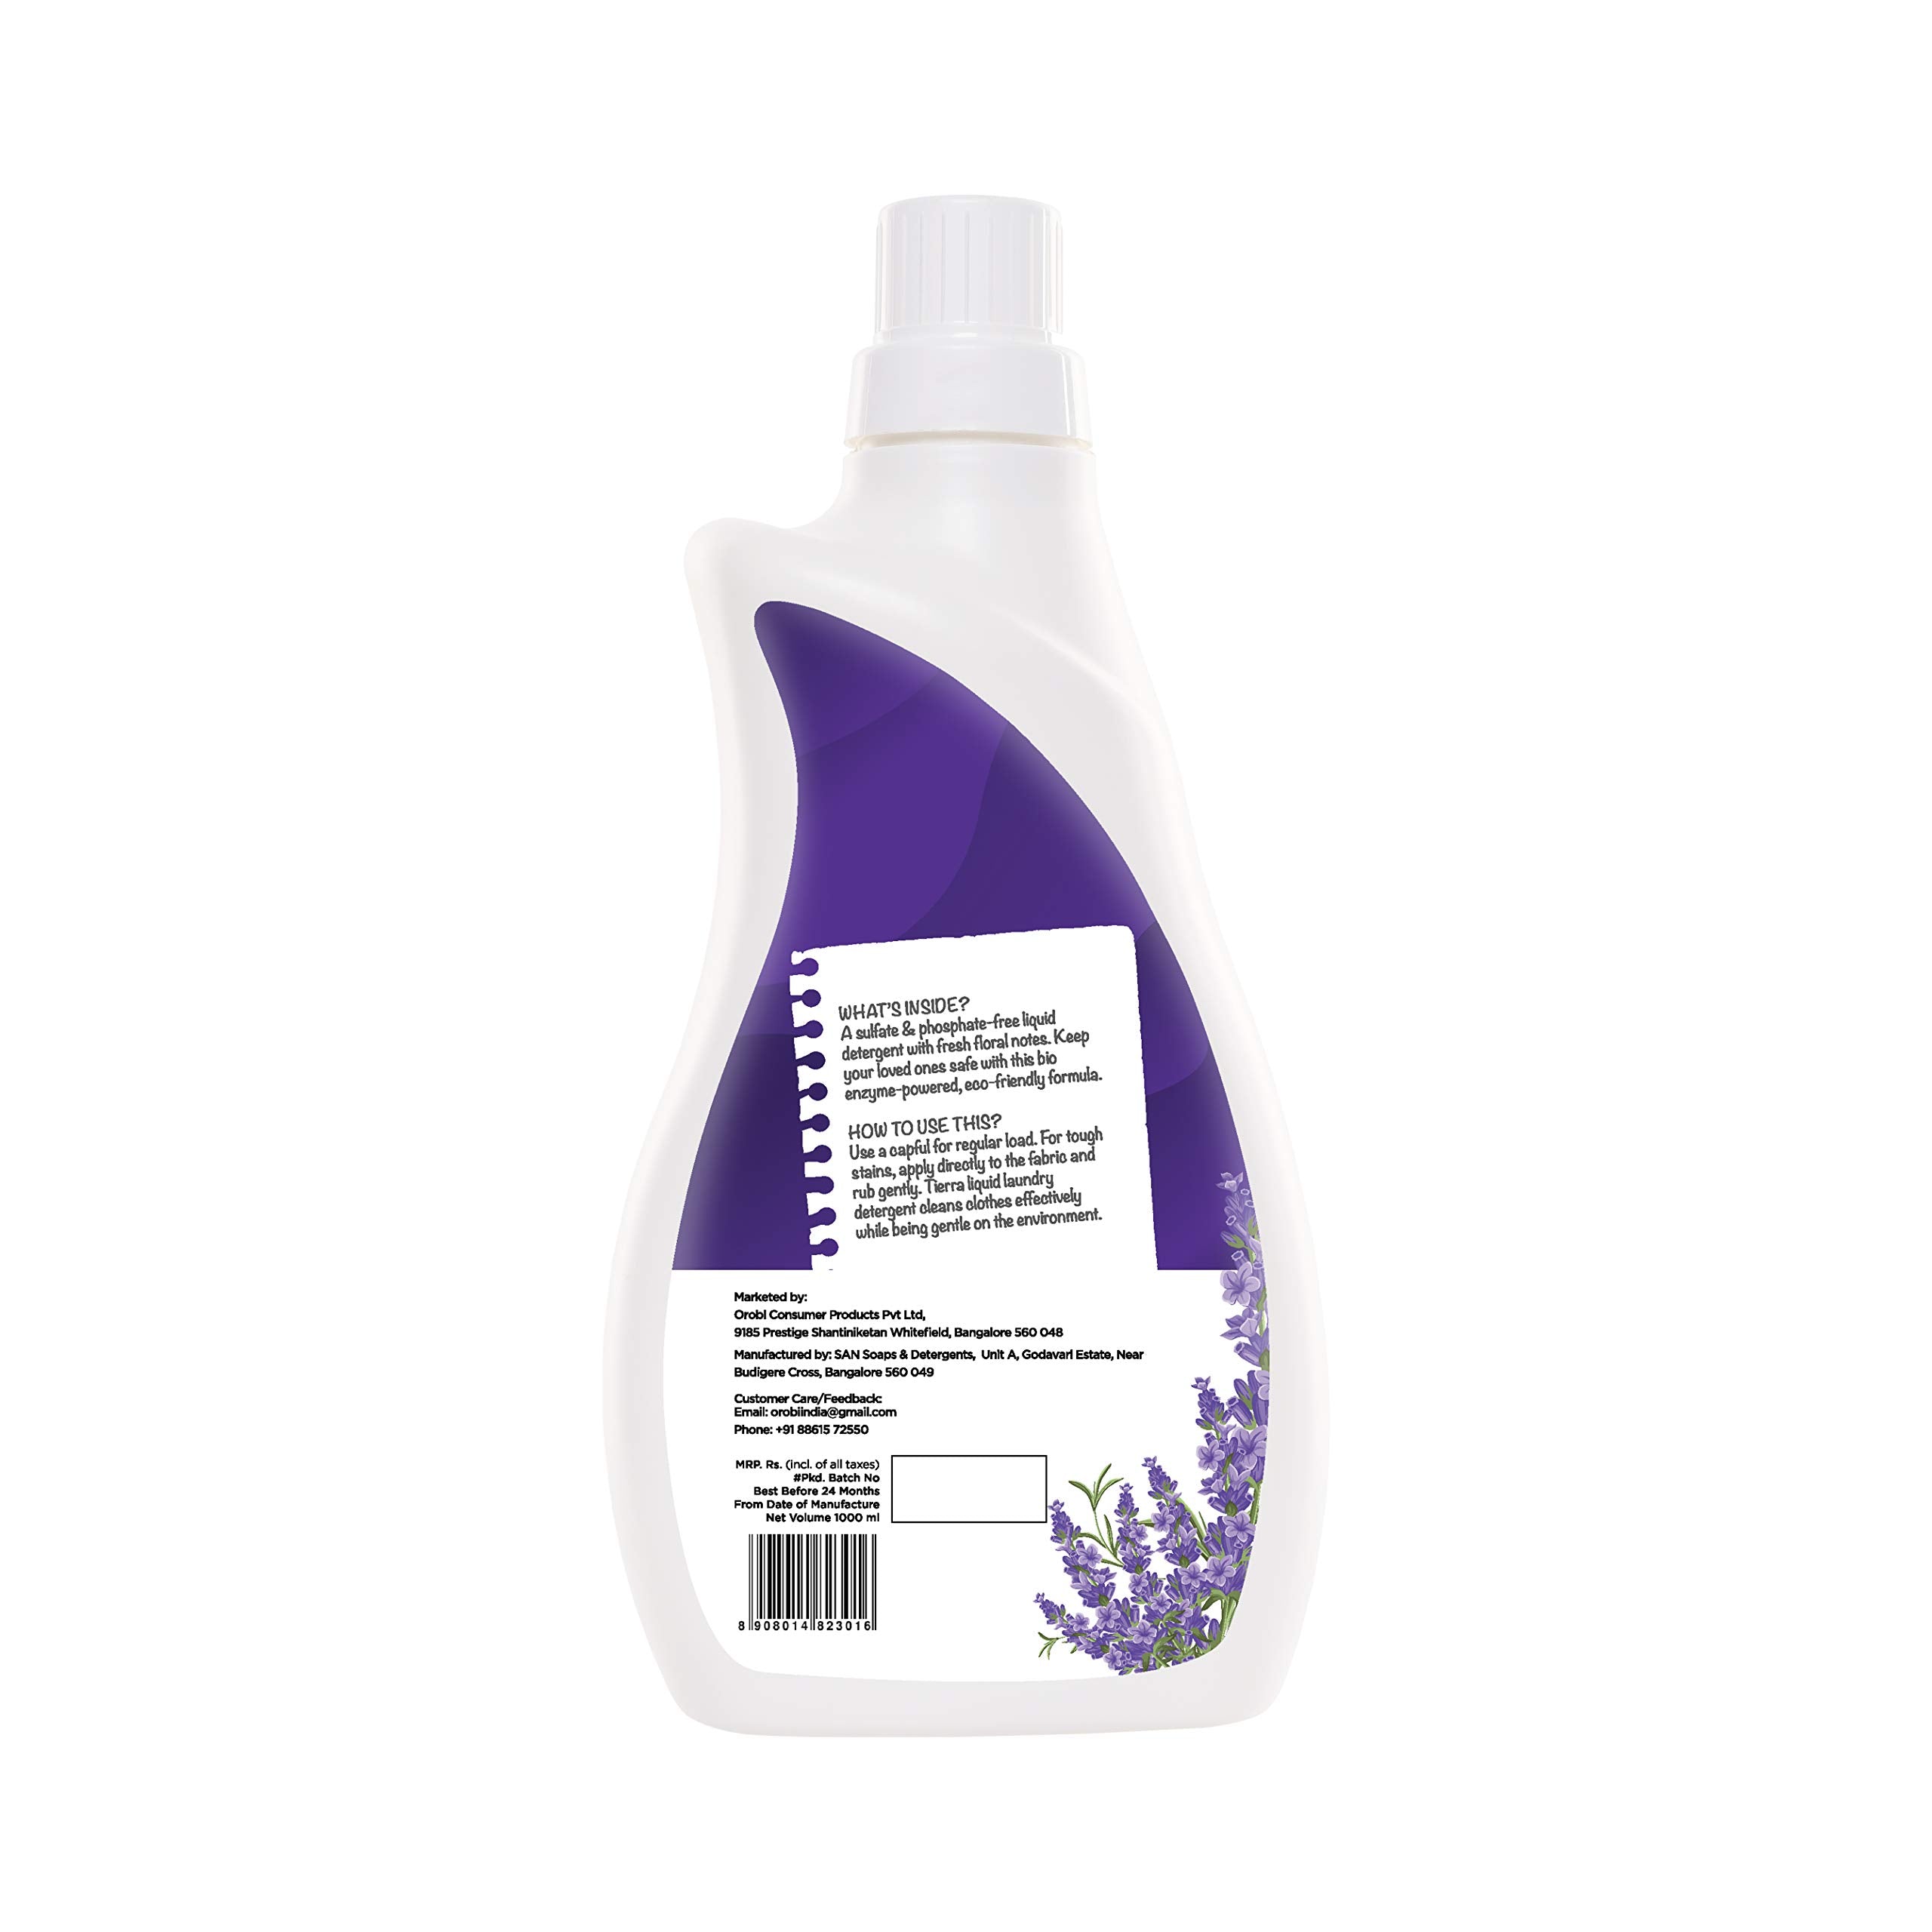 Tierra Gentle Laundry Detergent | Lavender 1000 ml